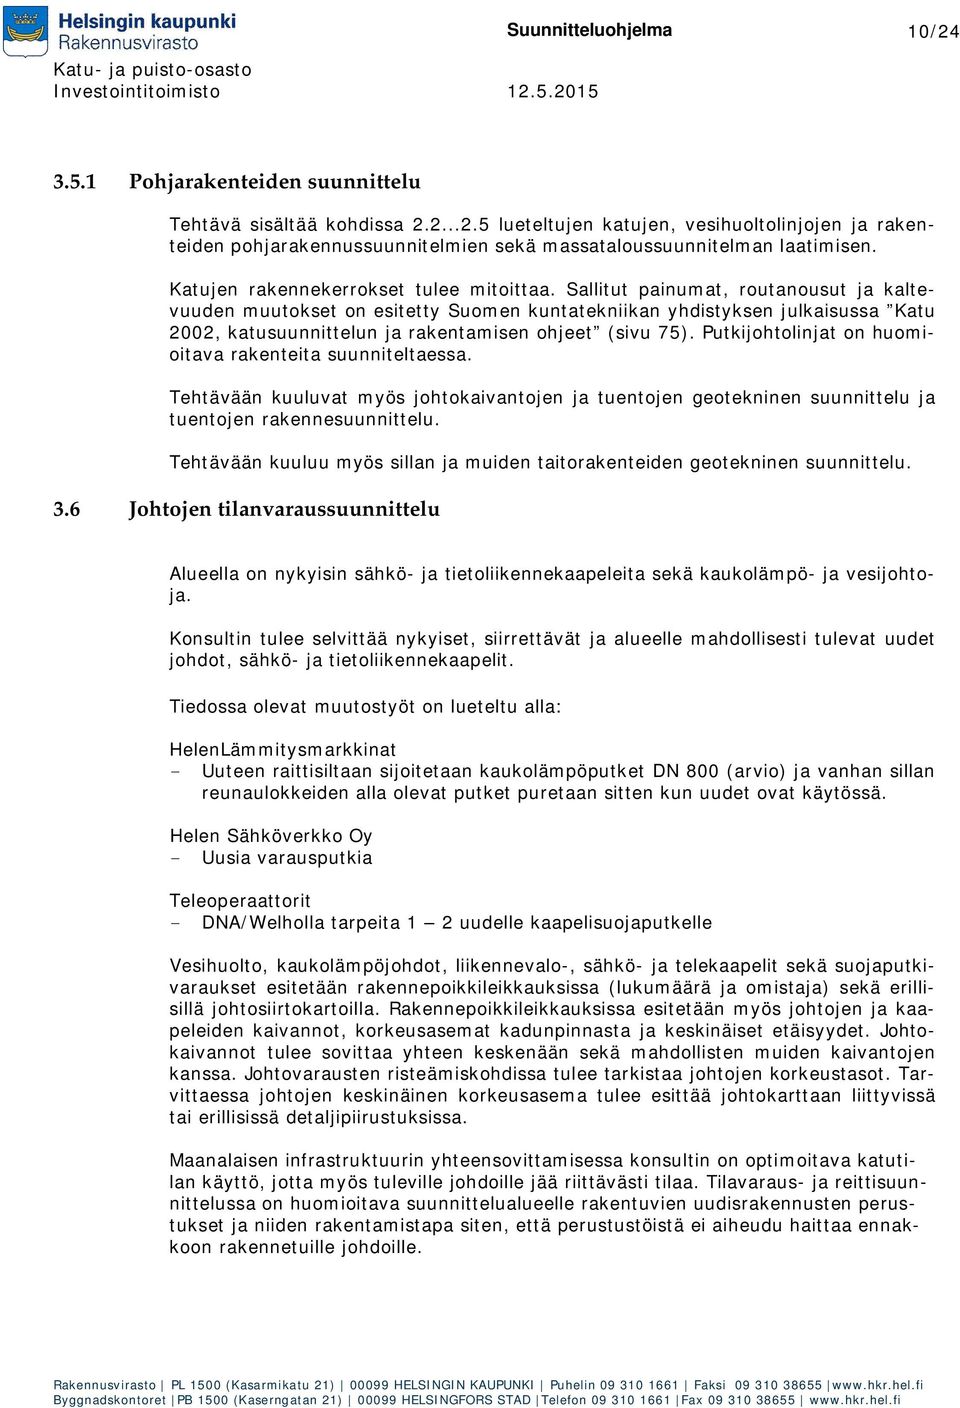 Sallitut painumat, routanousut ja kaltevuuden muutokset on esitetty Suomen kuntatekniikan yhdistyksen julkaisussa Katu 2002, katusuunnittelun ja rakentamisen ohjeet (sivu 75).